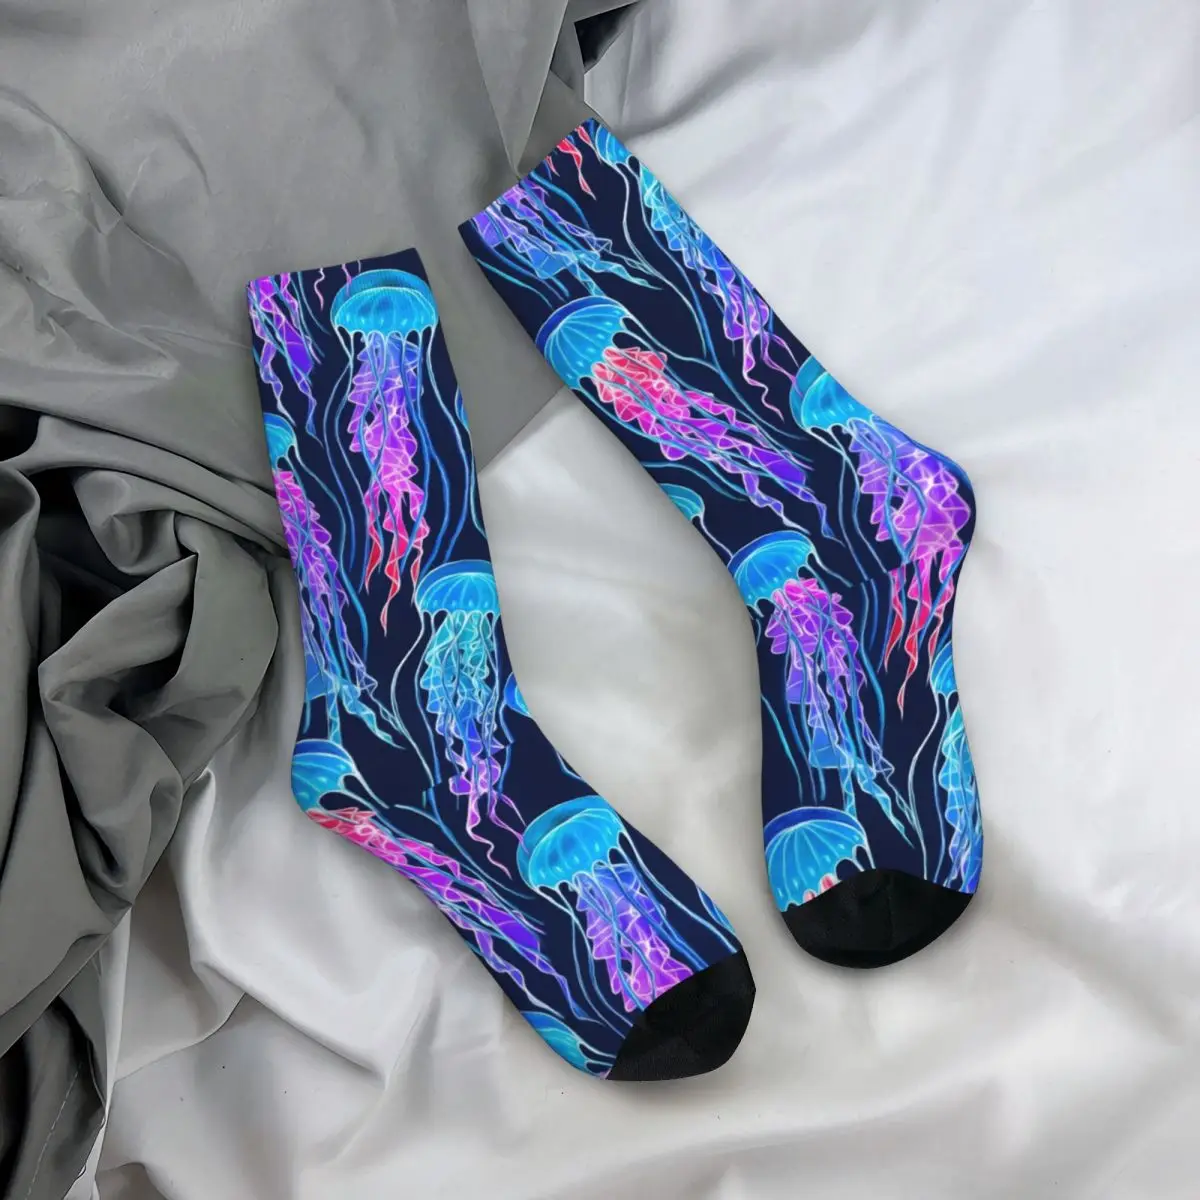 Retro Işıldayan Gökkuşağı Denizanası Lacivert futbol çorapları Polyester Uzun Çorap Unisex Ter Emici